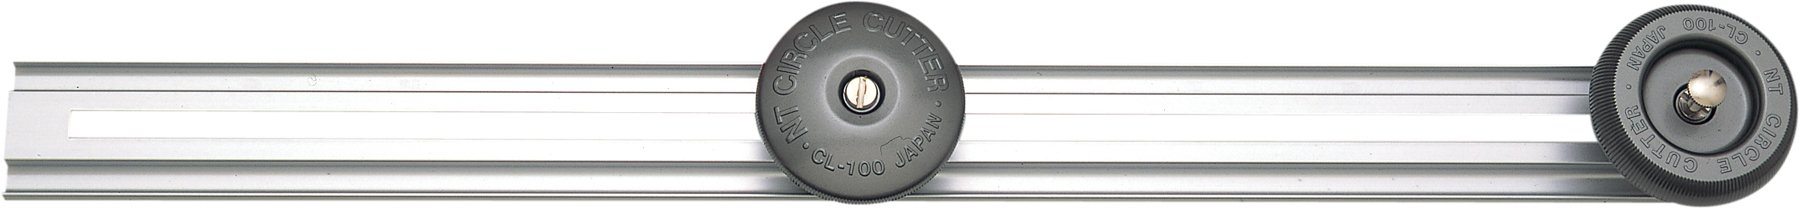 NT Cutter Robuster großer Kreisschneider, 3-15/16 Zoll ~ 99-3/8 Zoll Durchmesser, 1 Schneider (CL-100P)